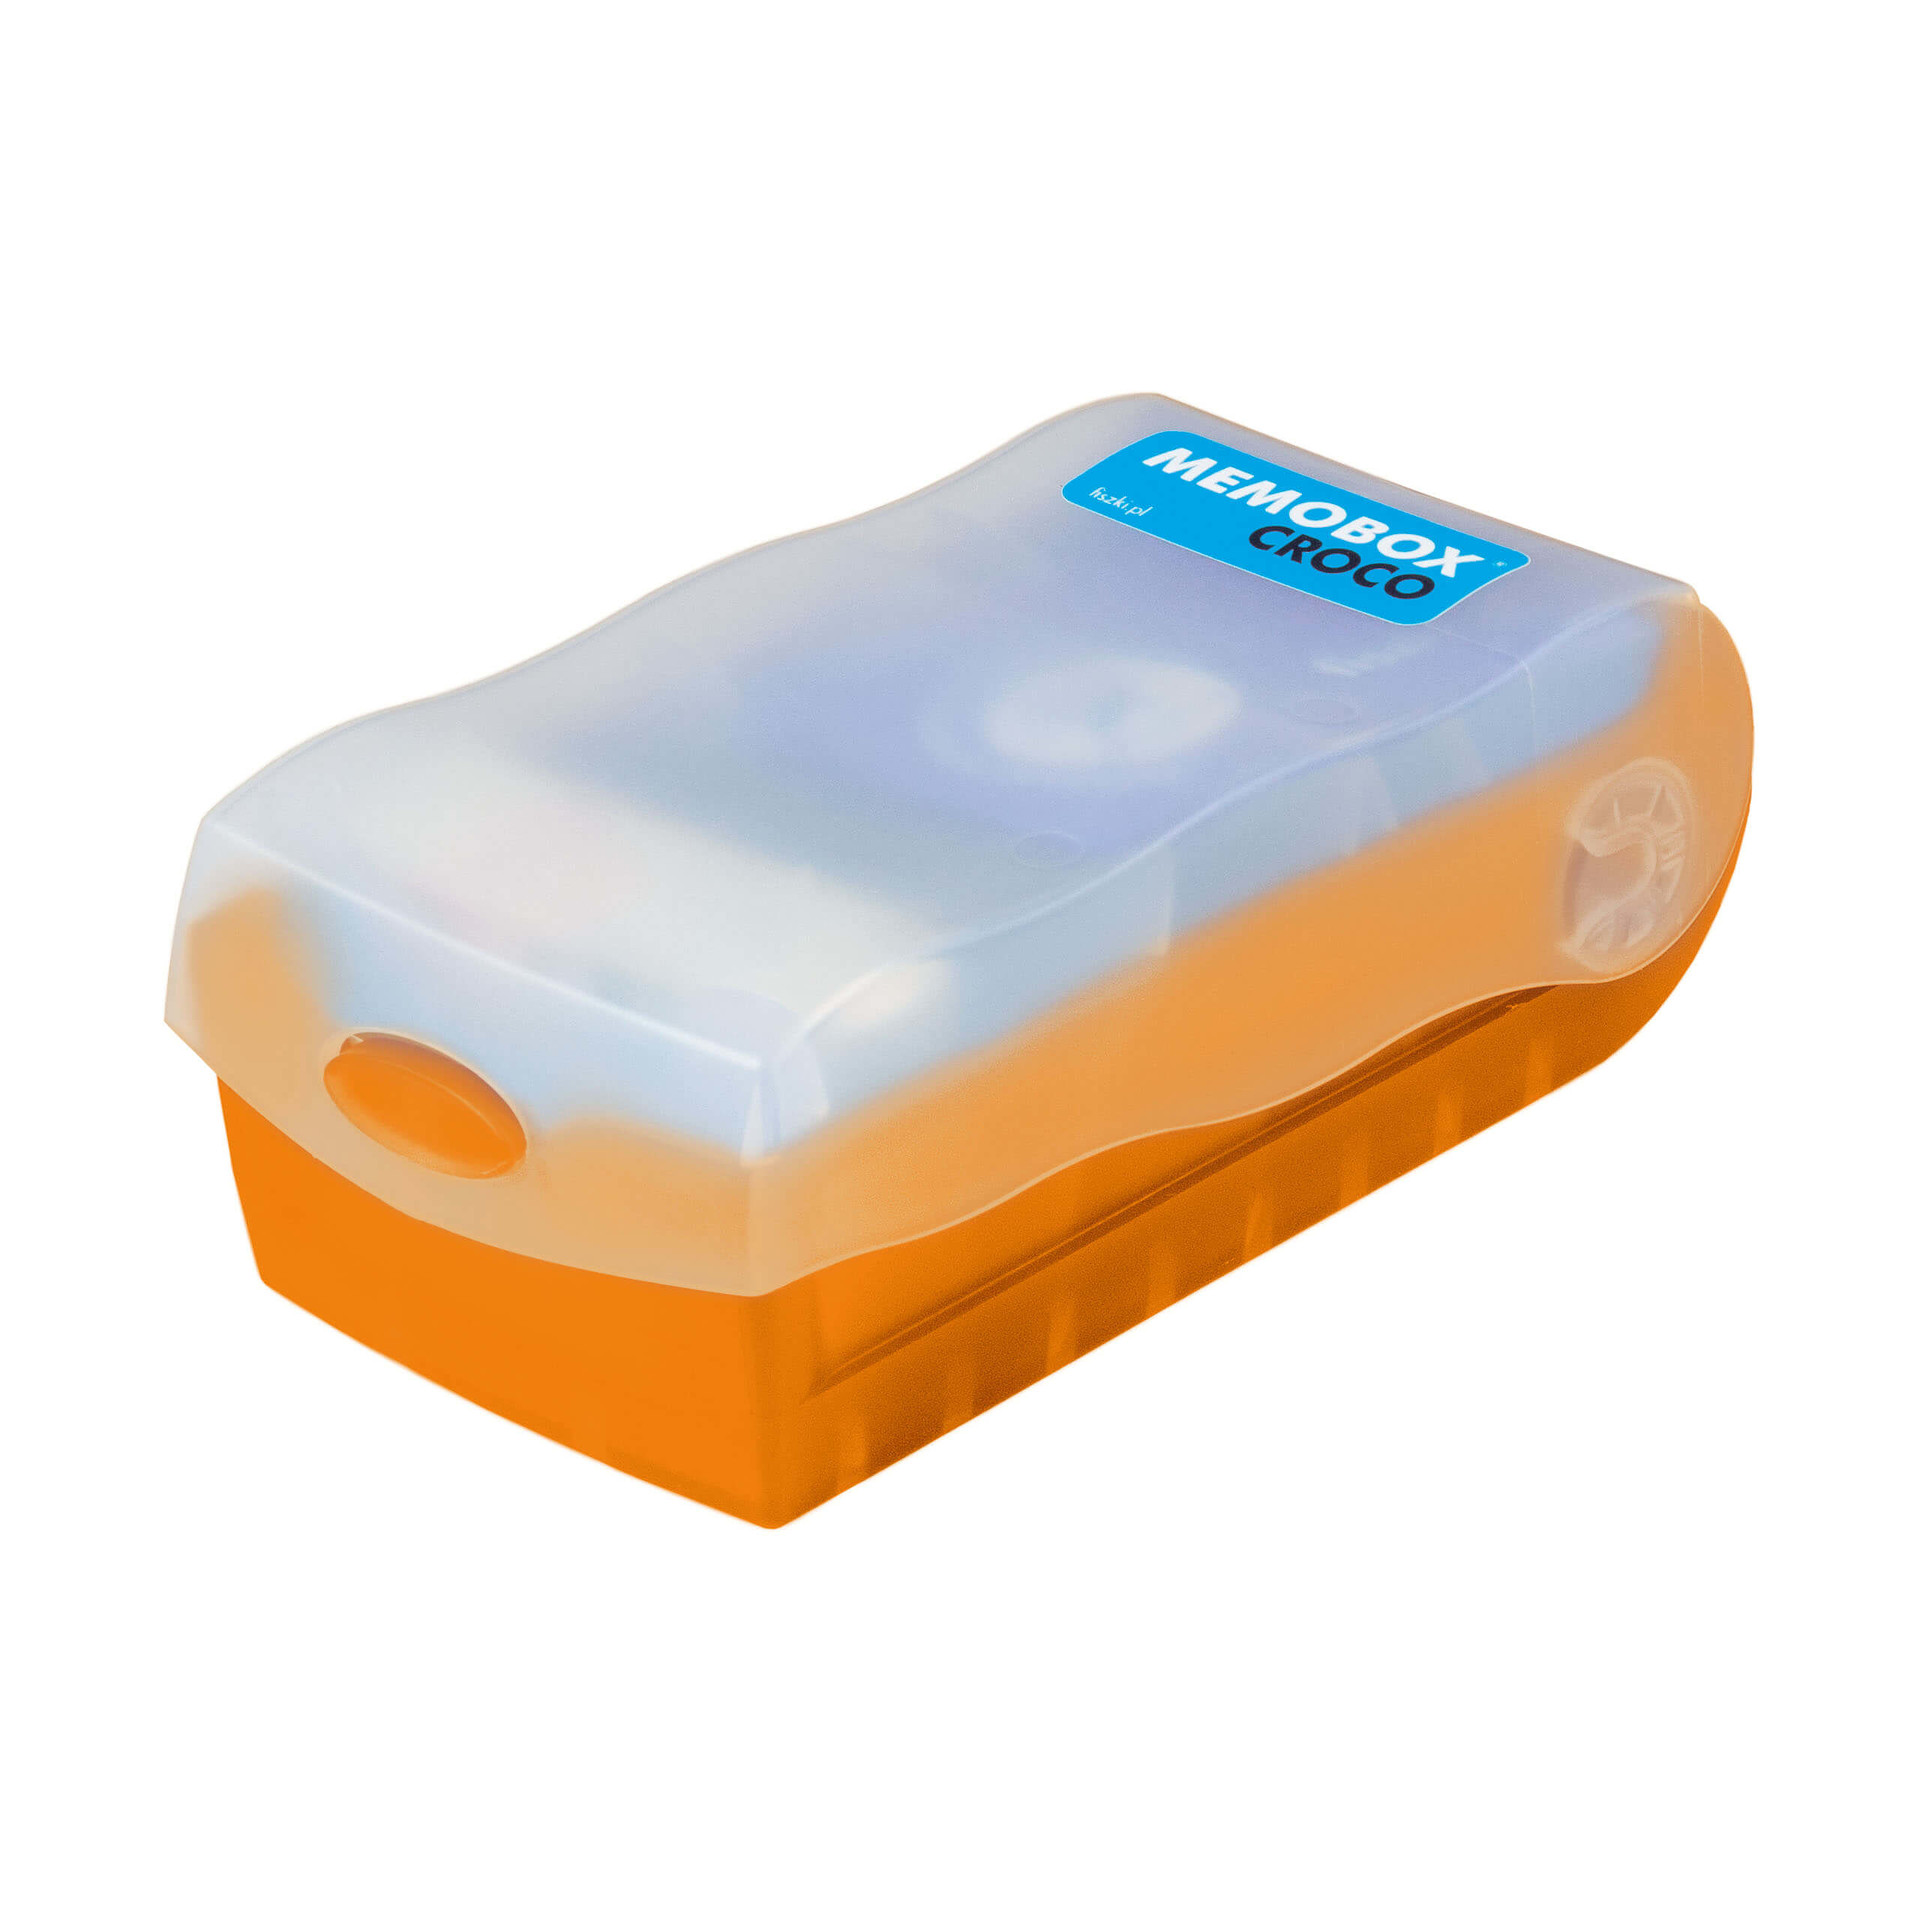 Memobox Croco Orange - Plastikowy - Pudełko Do Szybkiej i Skutecznej Nauki Języka Obcego